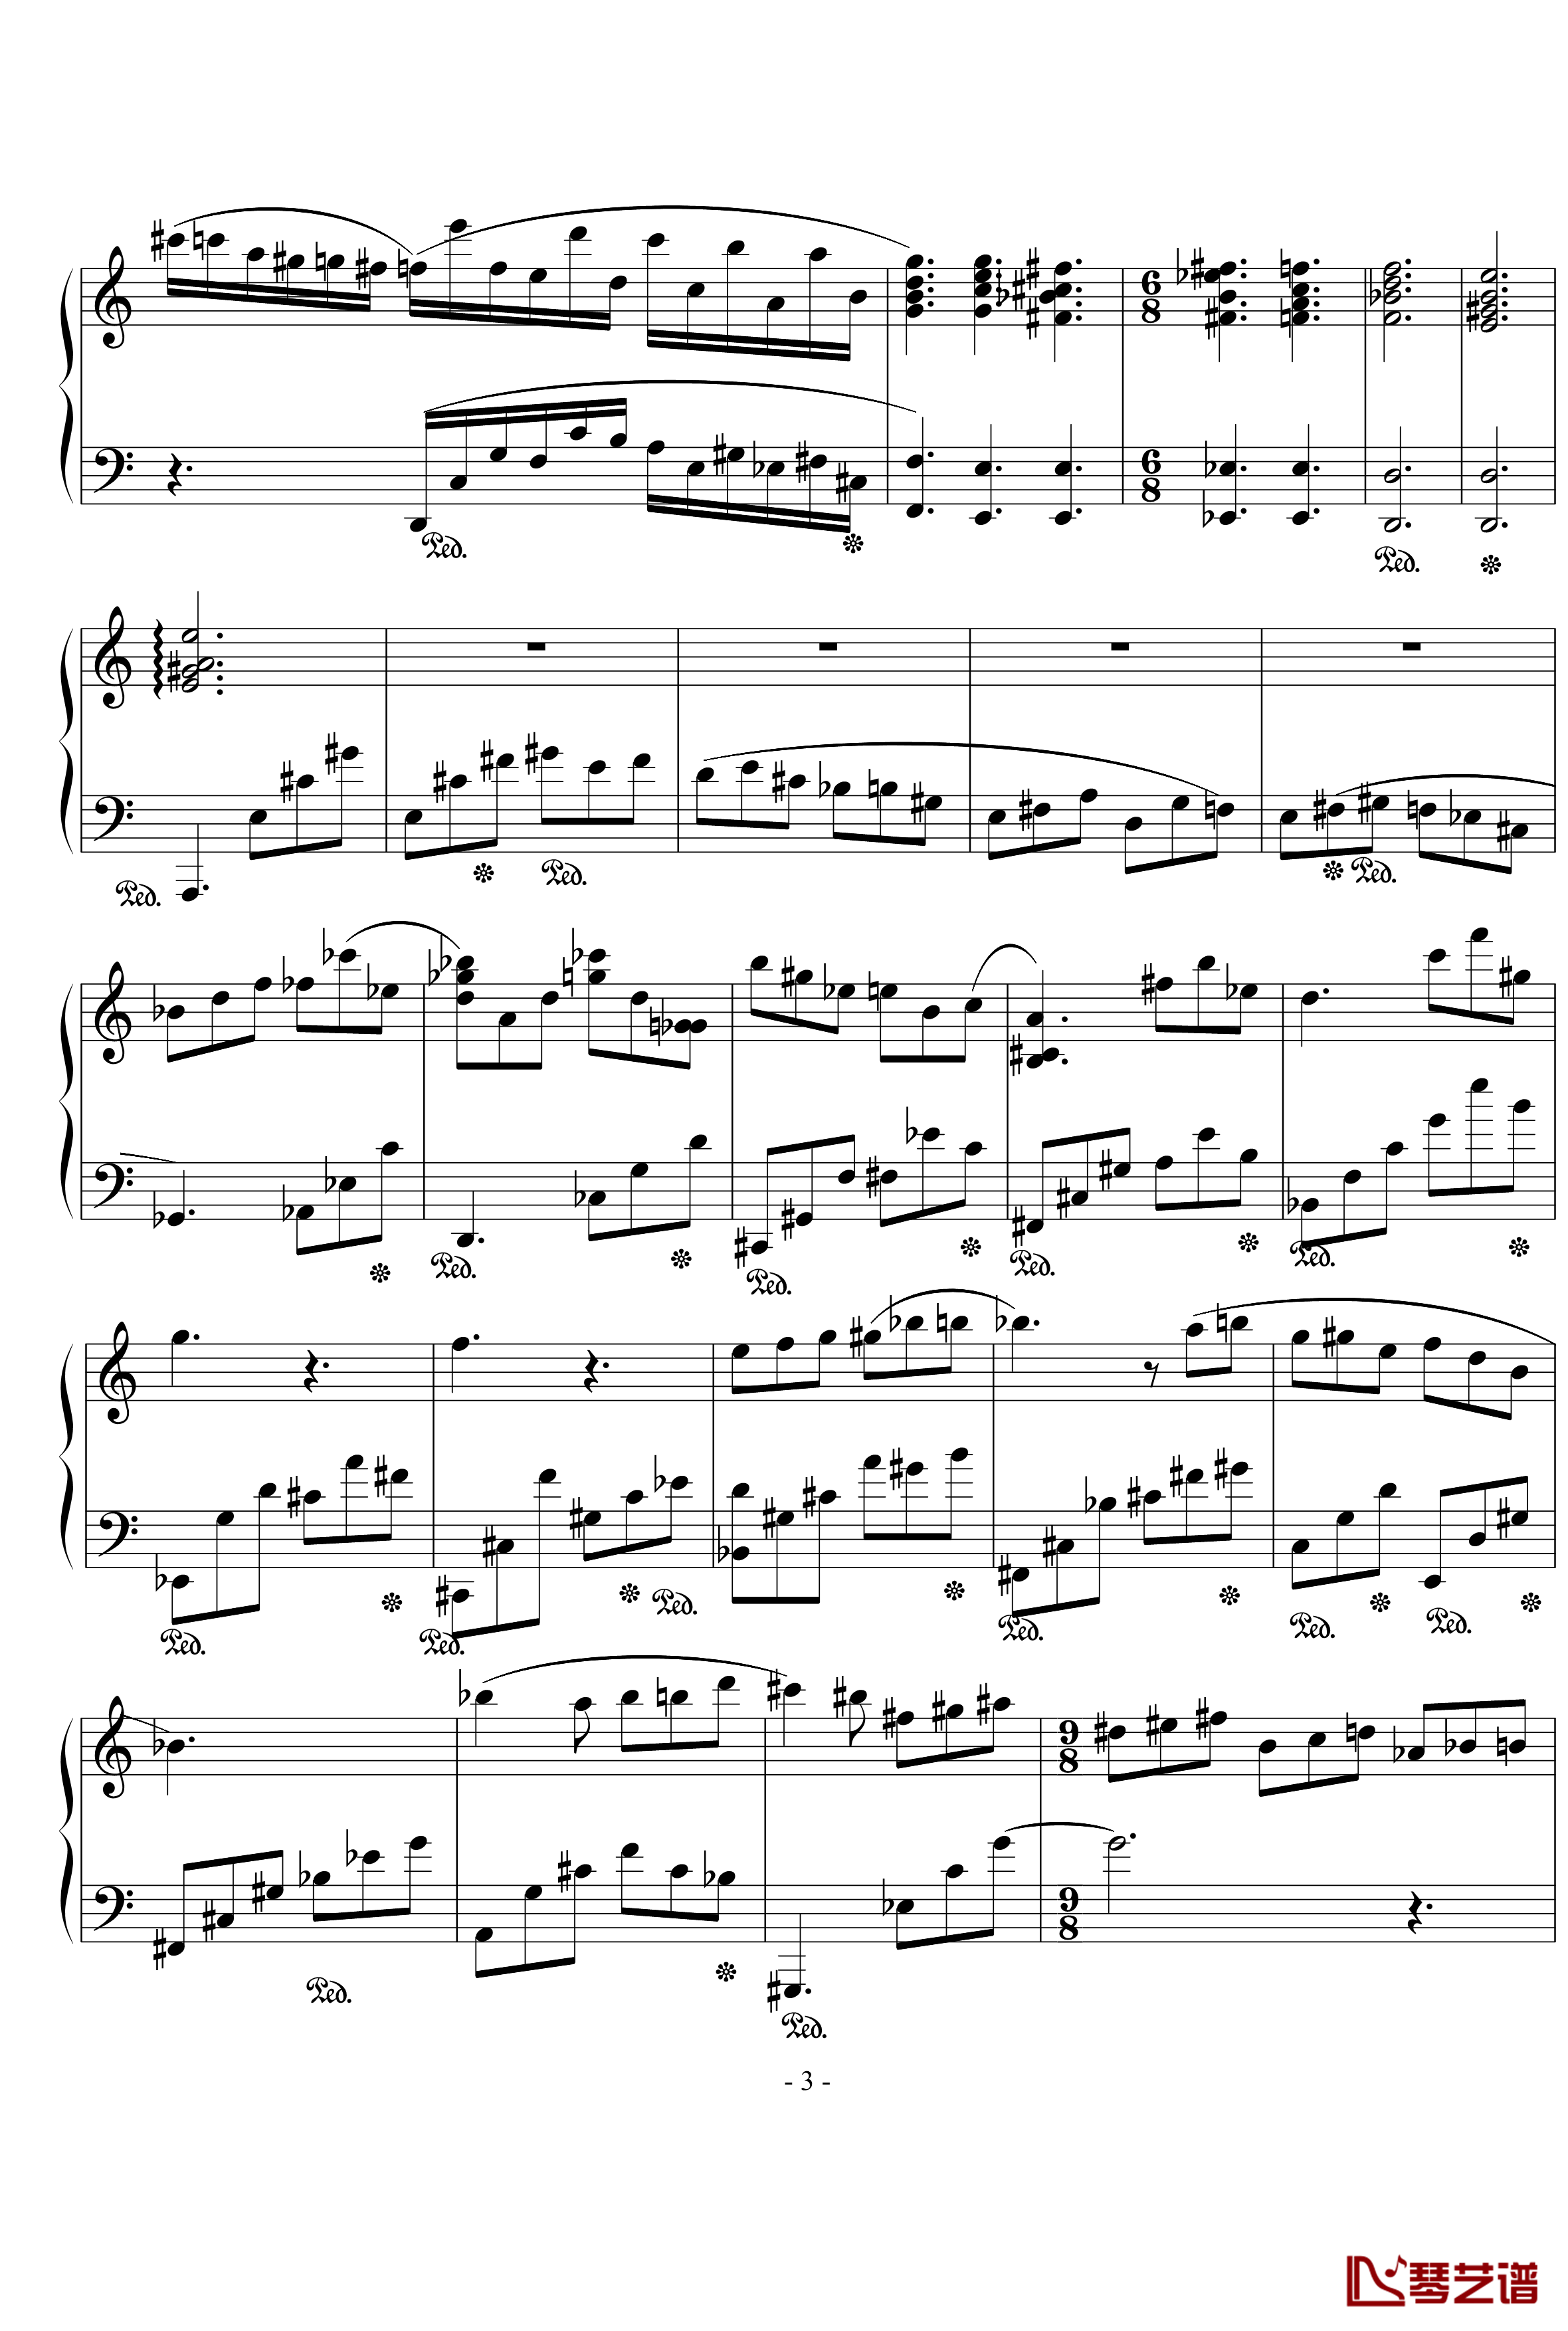 浪漫主义音乐的传统钢琴谱-幻想曲-D大调-流行追梦人